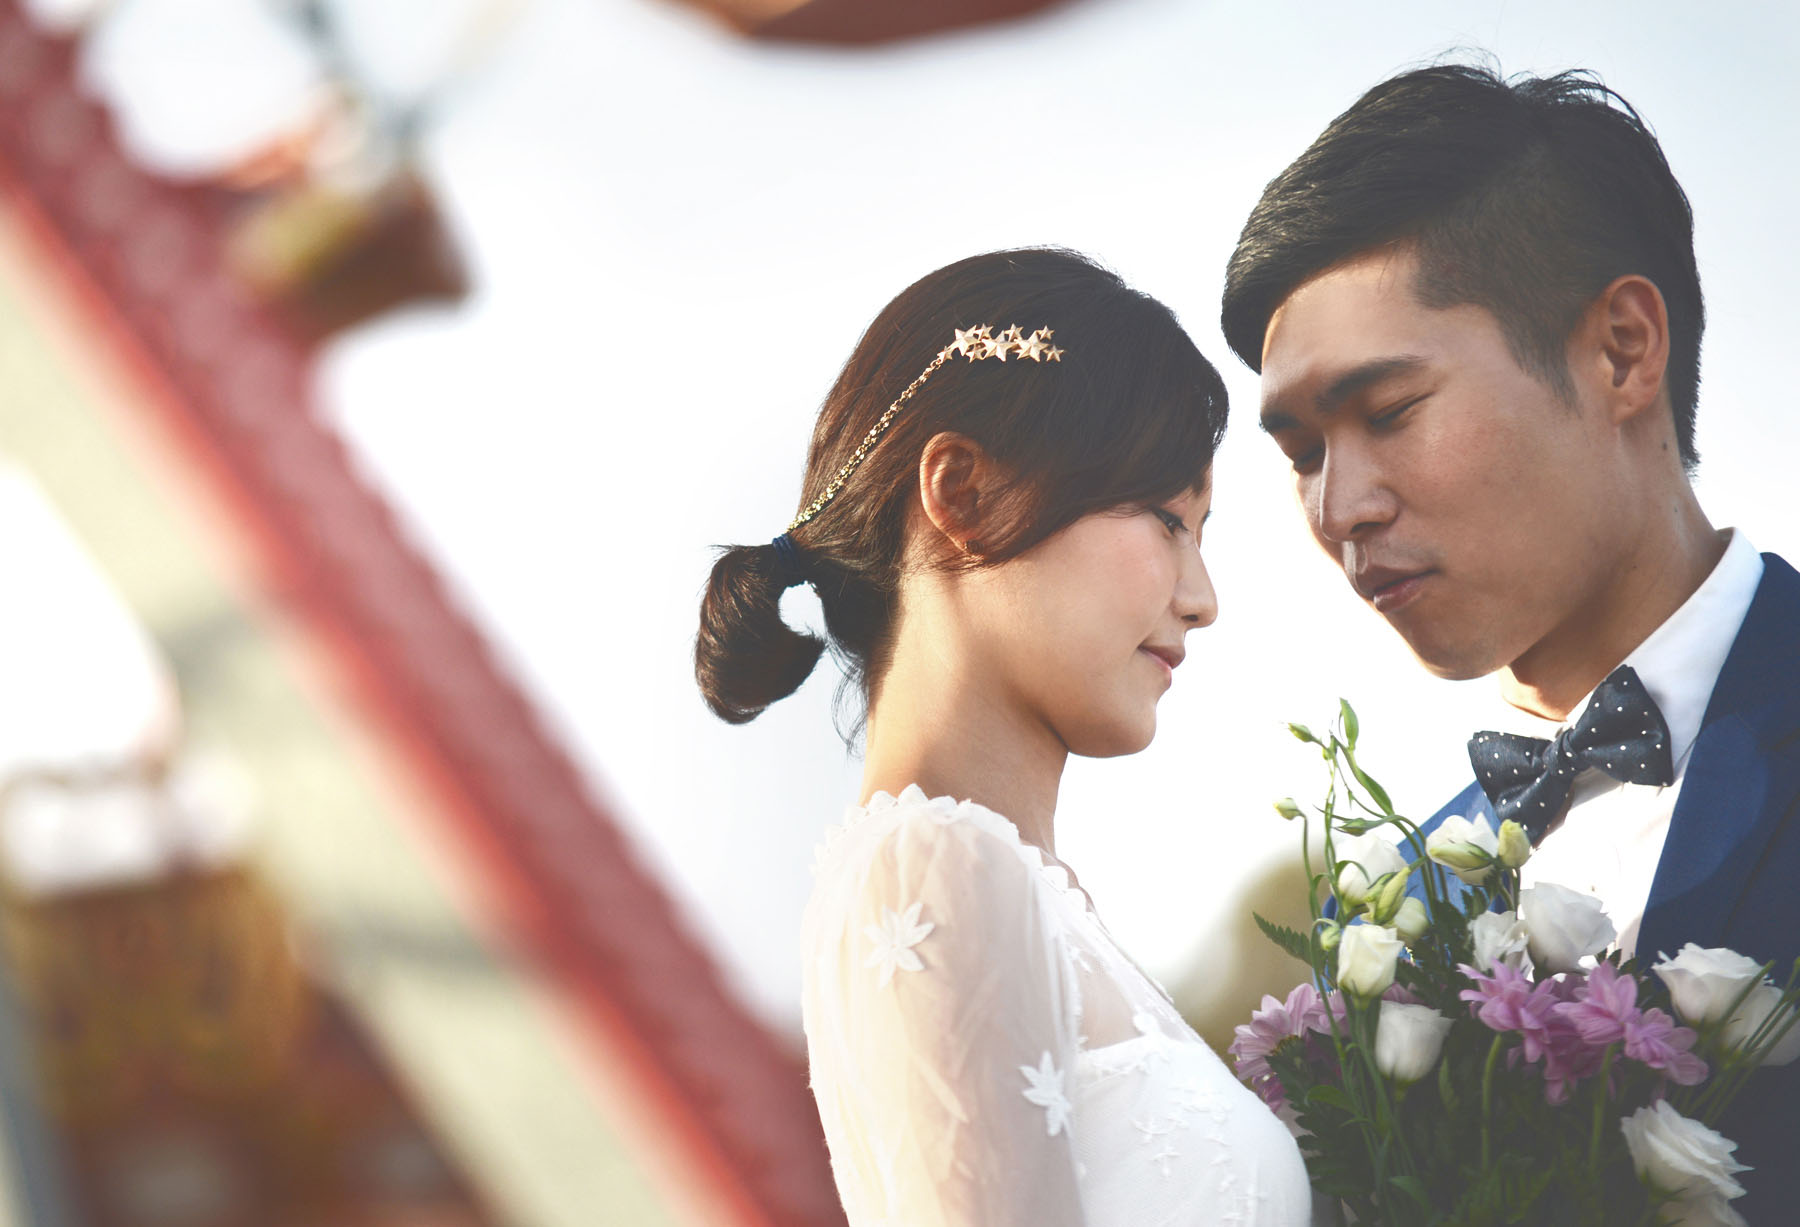 Korean wedding photos